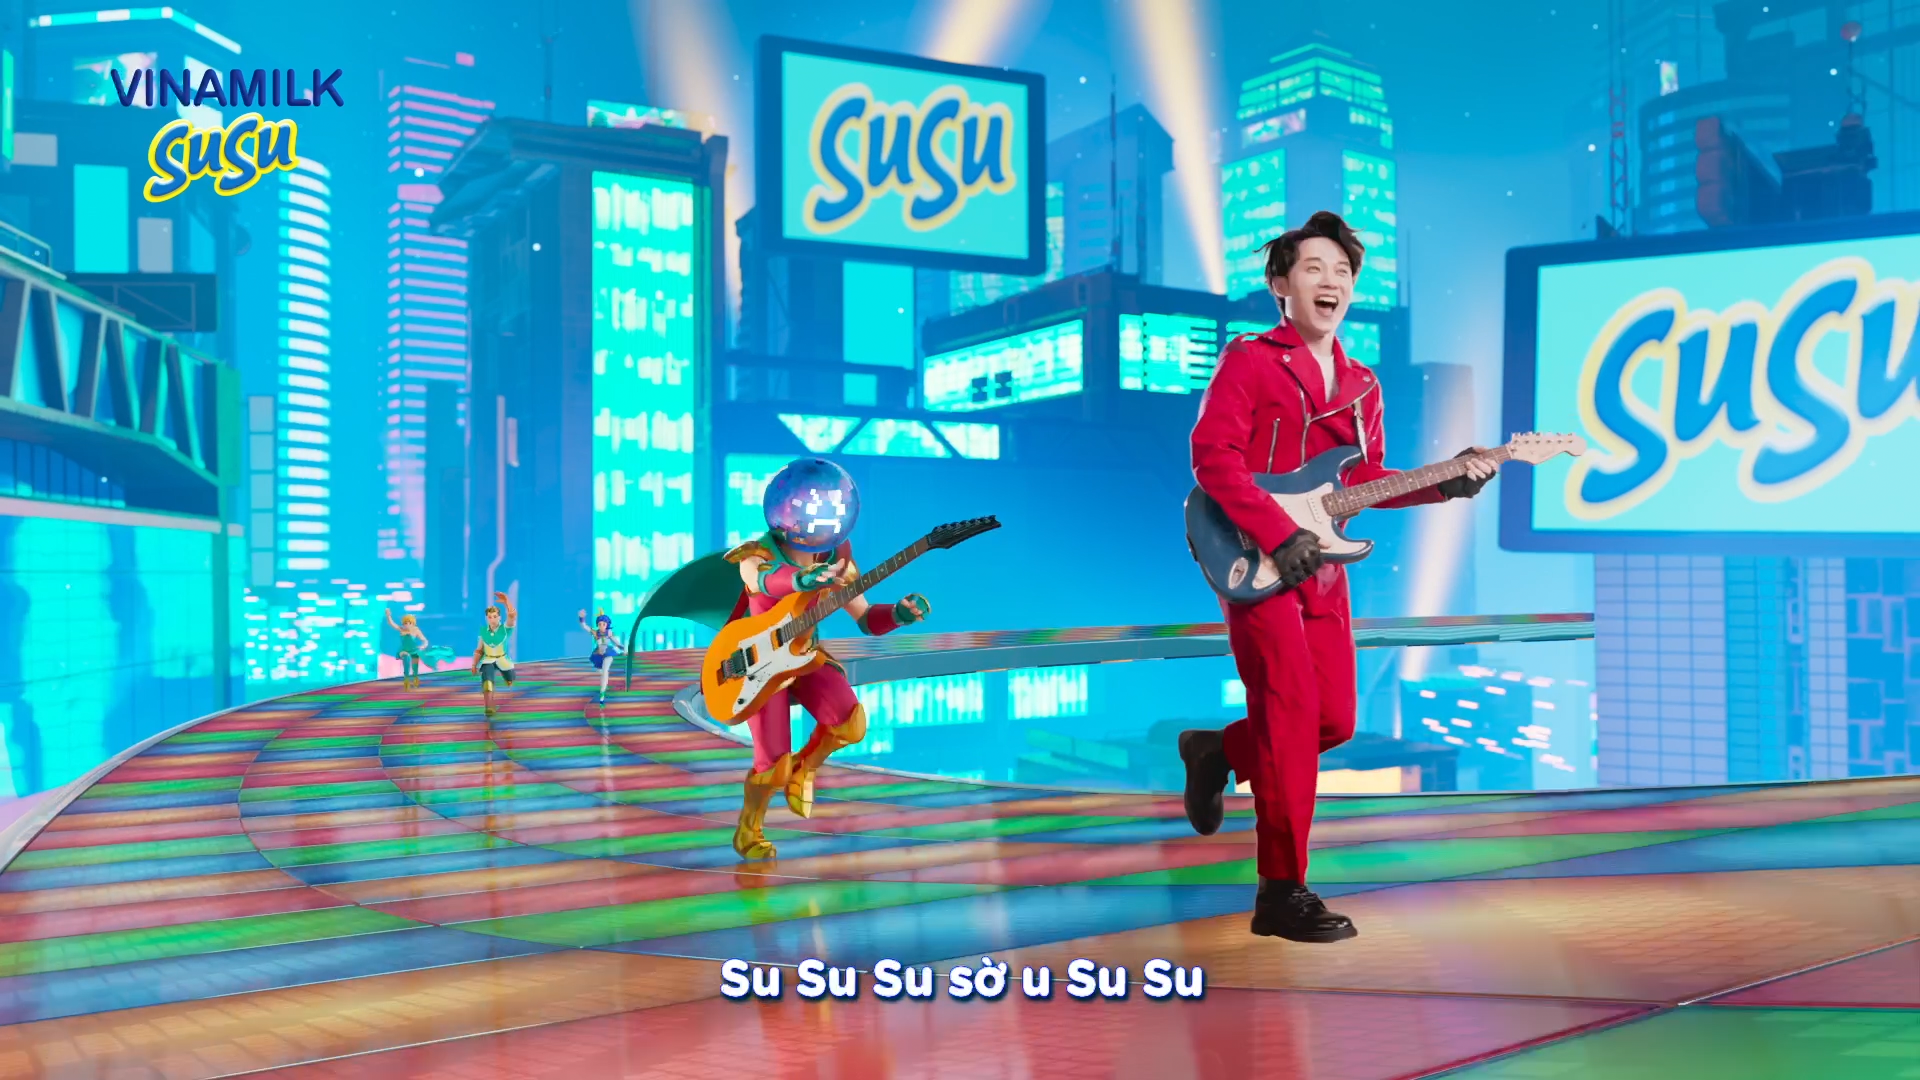 Hiệu ứng bất ngờ từ MV ca nhạc mới ra mắt có sự tham gia của ca sĩ Trúc Nhân - Ảnh 3.